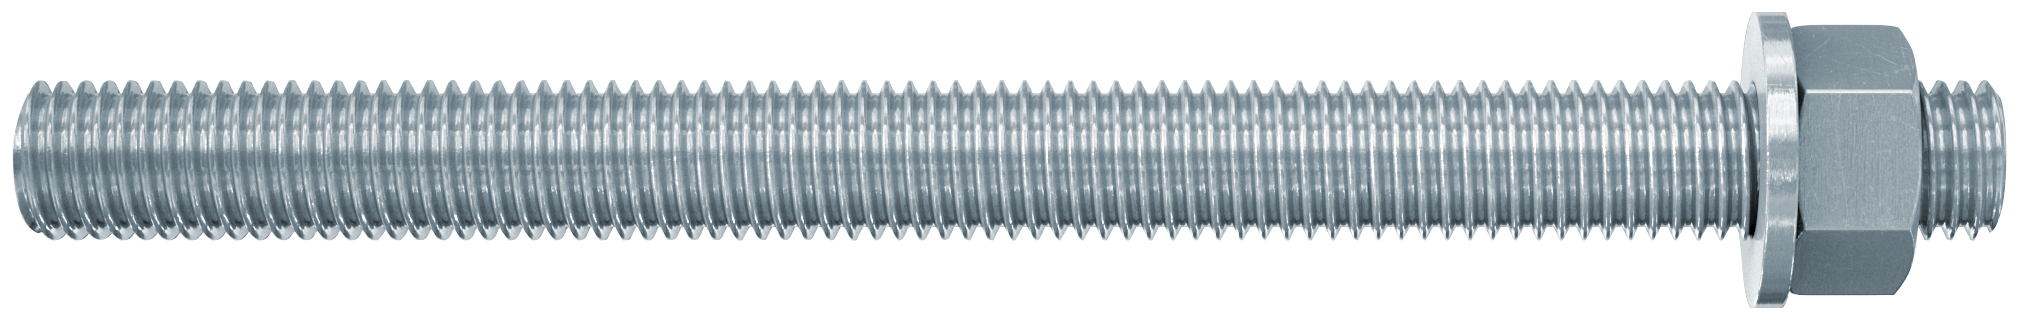 fischer Barre filettate in acciaio FIS A M 12 X 180 8.8 (1 Pz.) Barra filettata in acciaio zincato con classe di resistenza 8.8, con taglio dritto, dado e rosetta.